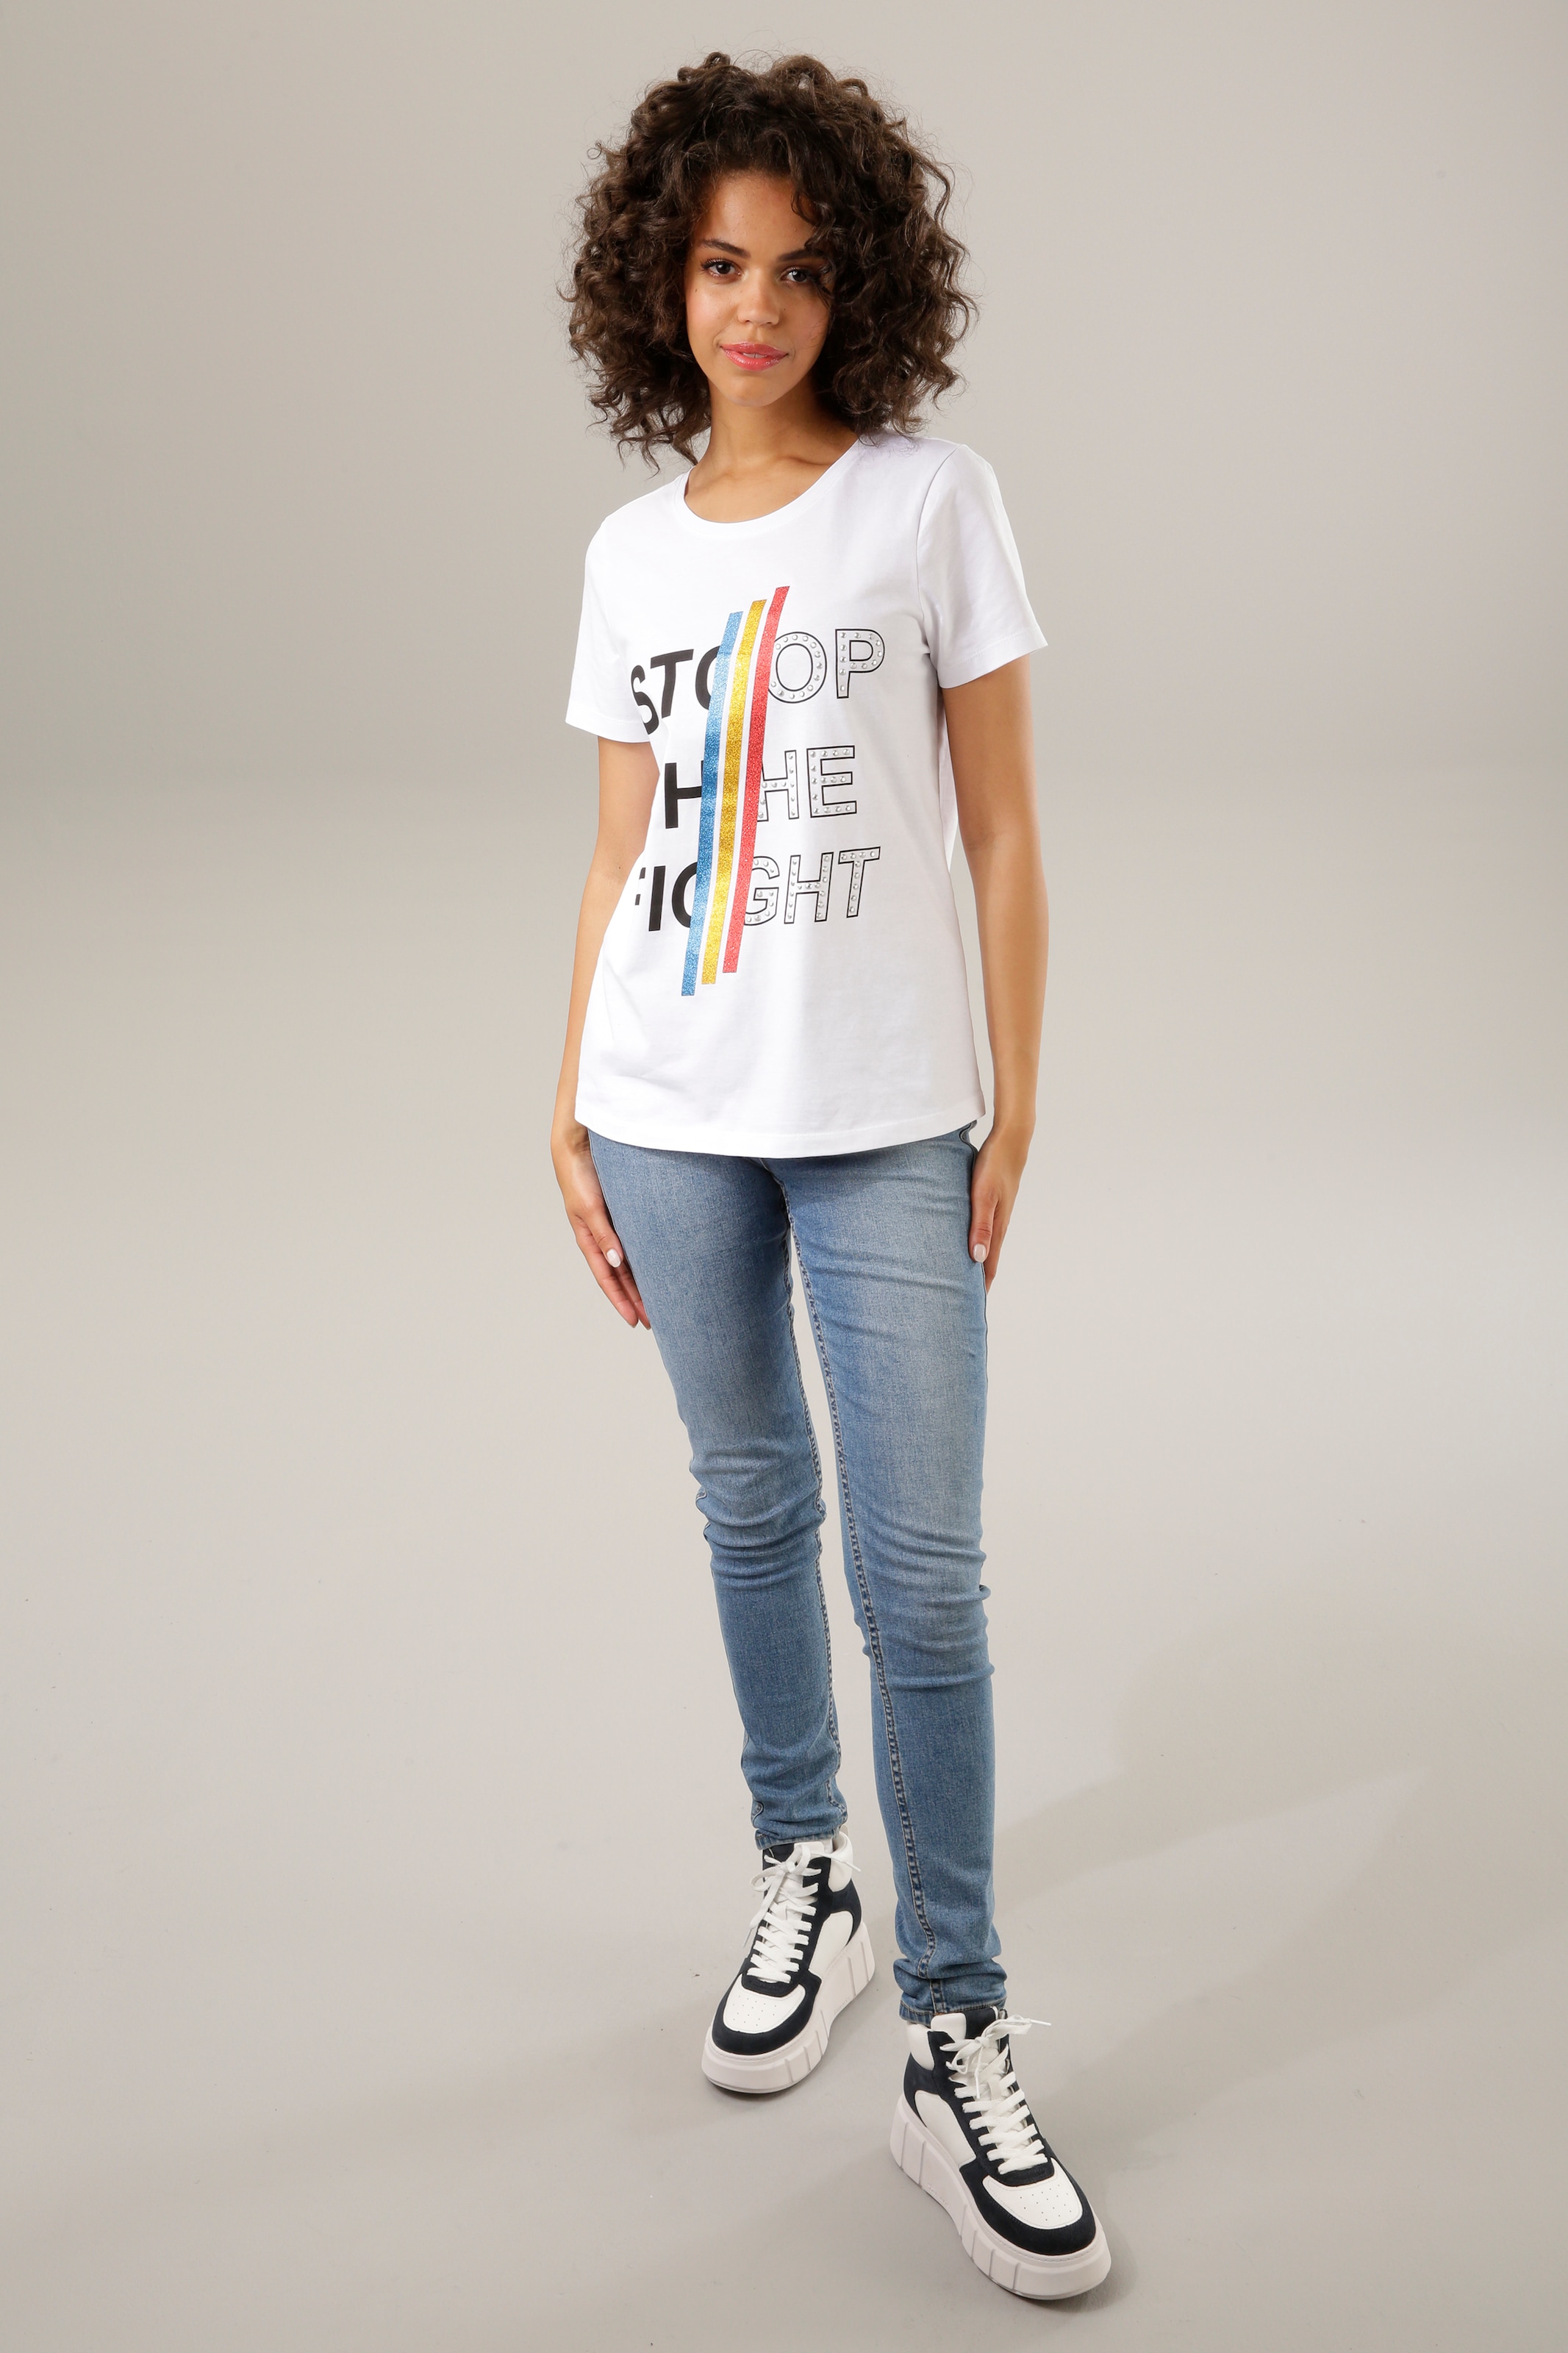 Aniston CASUAL Print-Shirt, mit bunten Glitzerstreifen, und Schriftzug shoppen Nieten